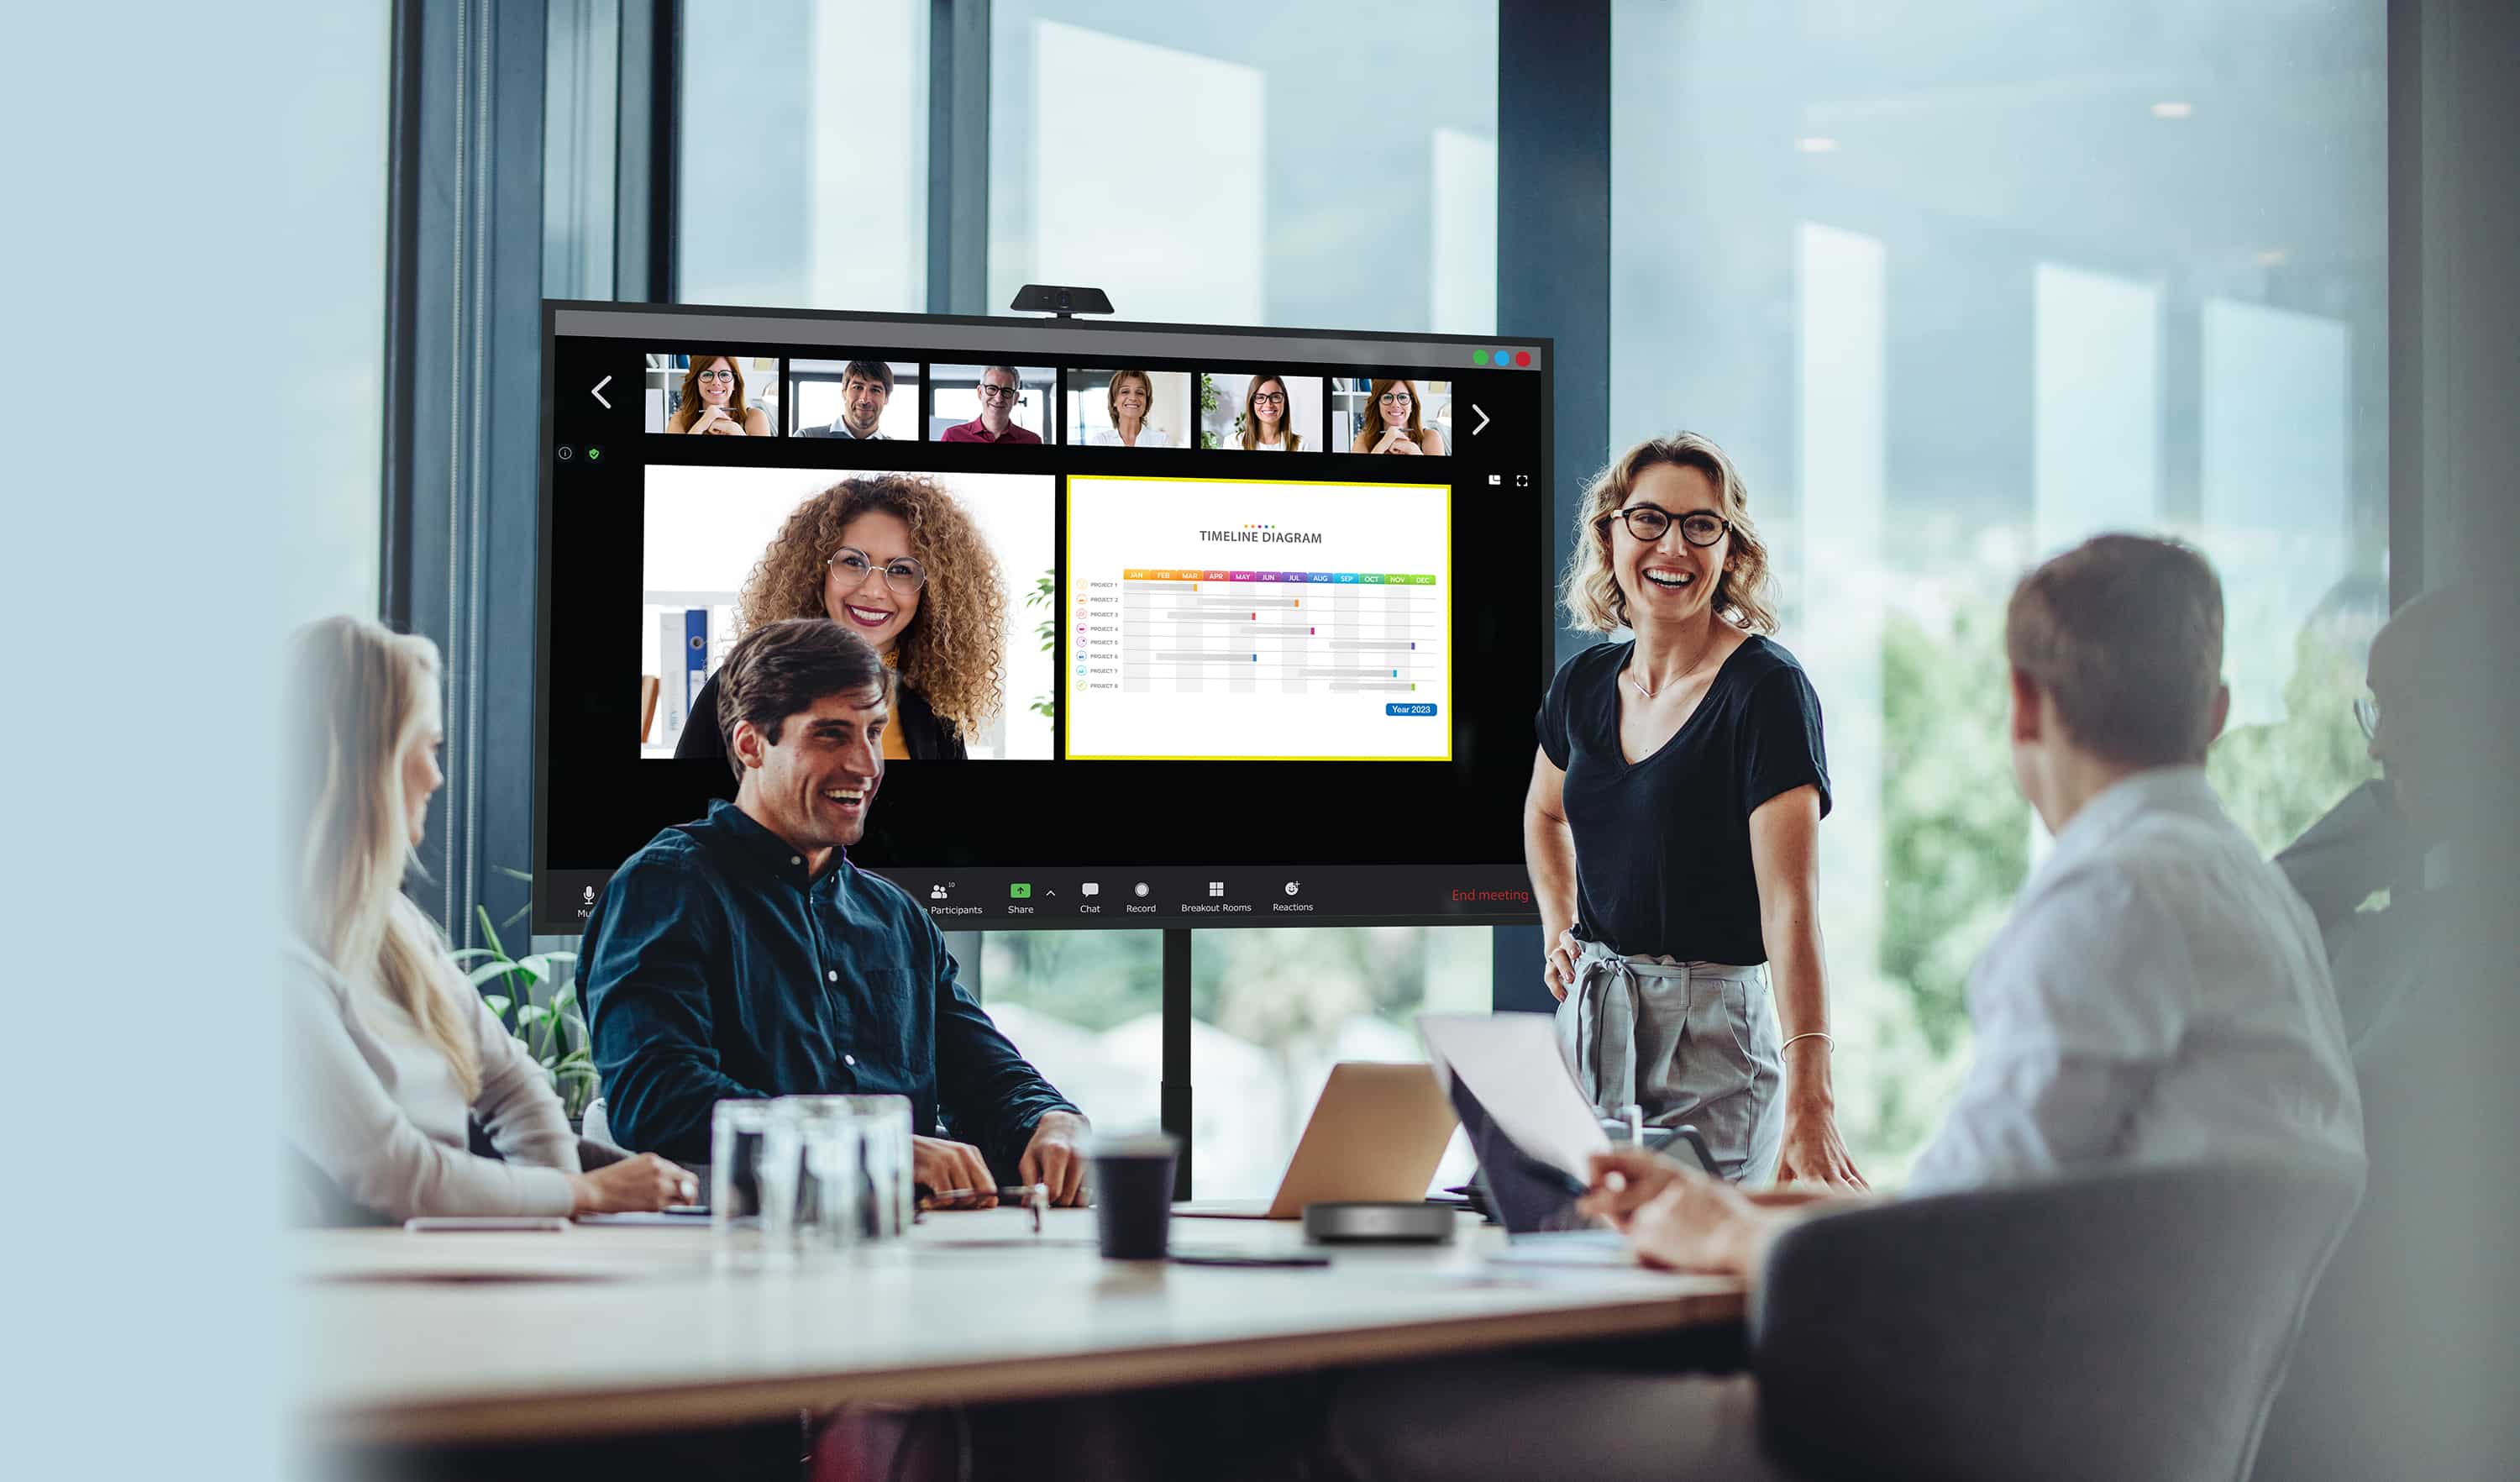 Des hommes d'affaires organisant une réunion avec des collaborateurs physiquement présents regardent un écran Série N Optoma tandis que leurs collègues à distance sont affichés à l'écran avec le contenu qu'ils partagent.